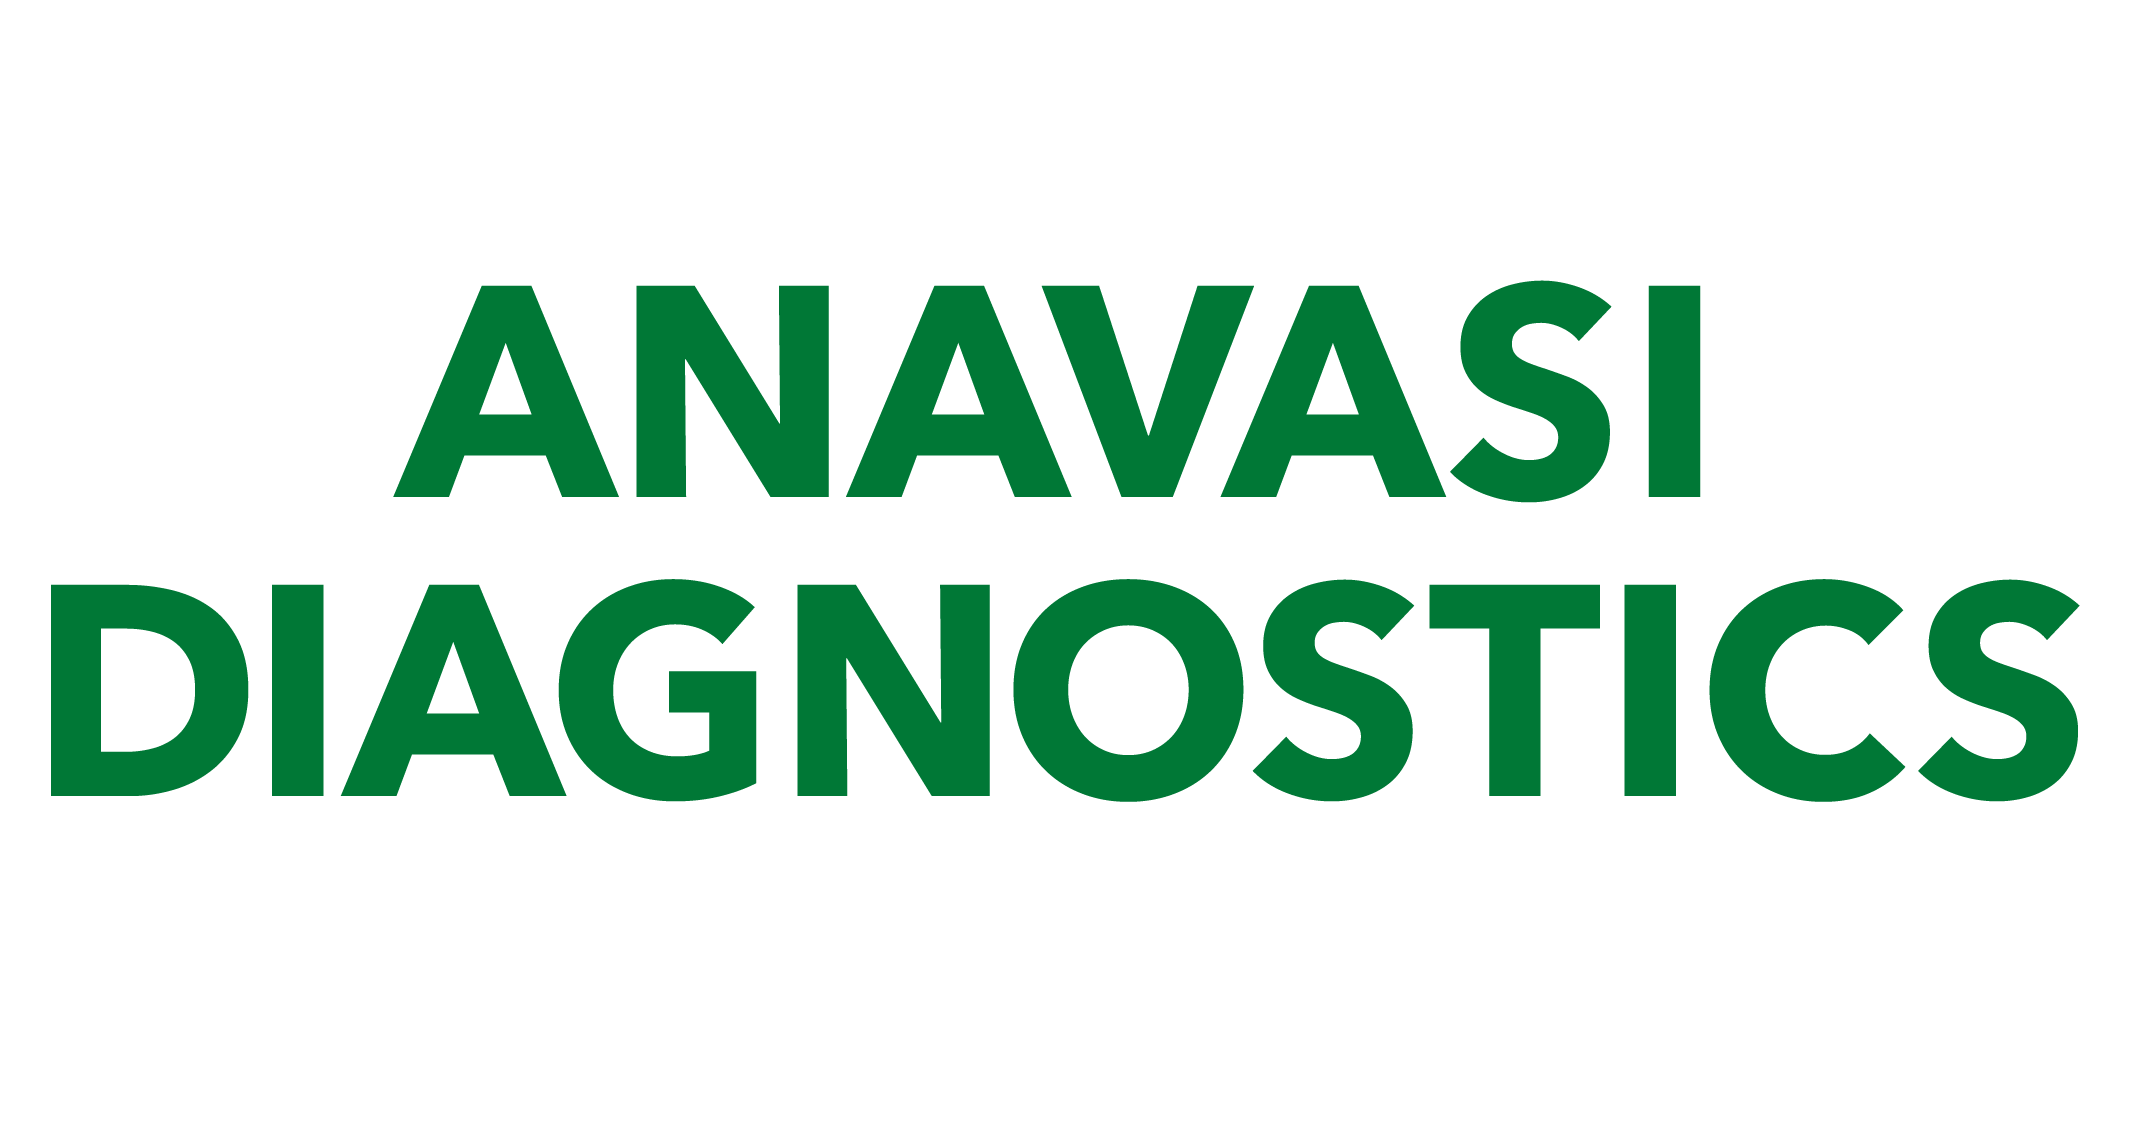 Anavasi Diagnostics